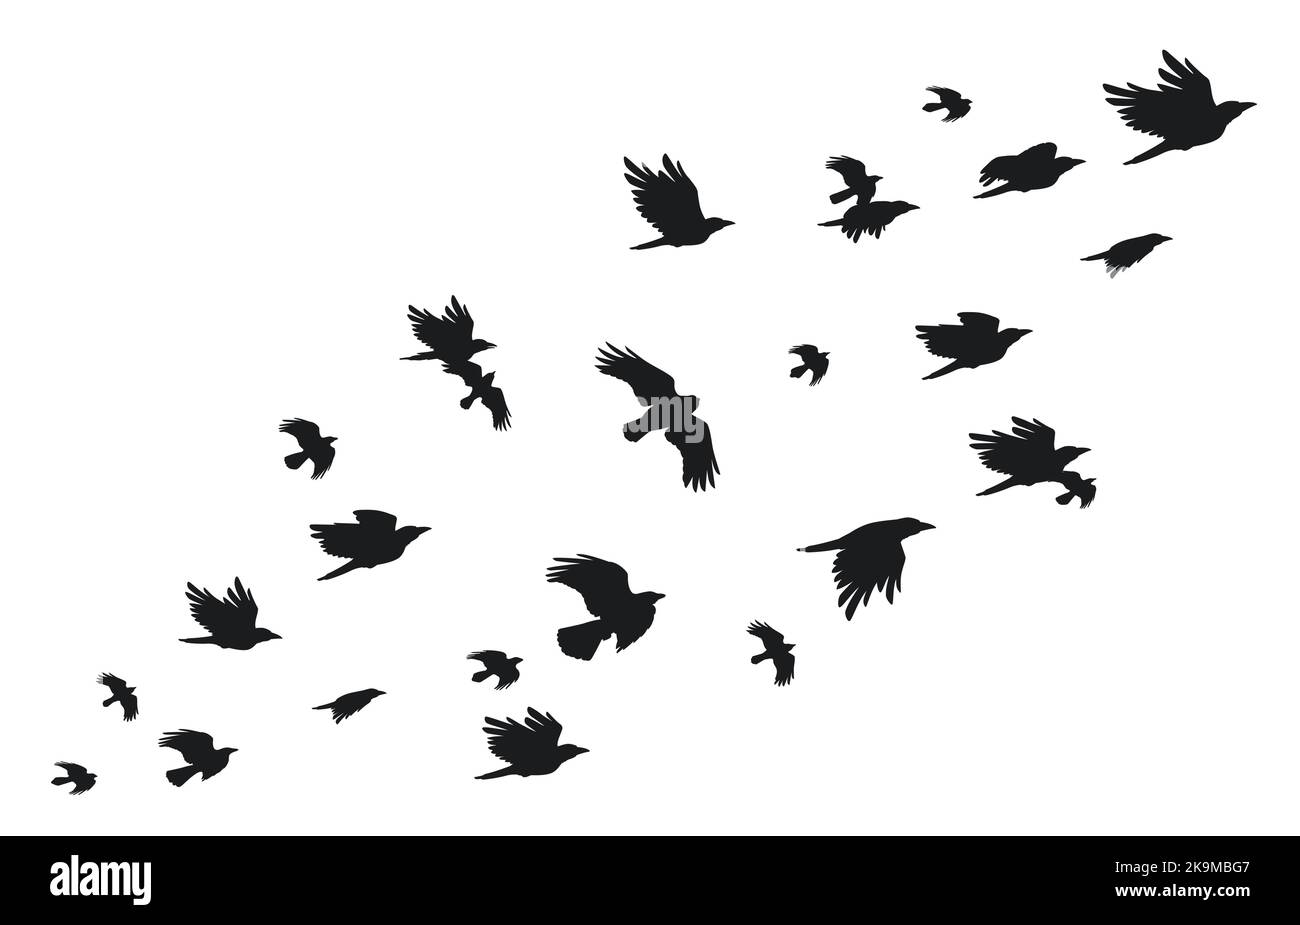 Schwarm Krähen. Fliegende schwarze Vögel in Himmel monochromen flattern Rabe Silhouette, Zugflug Gruppe von wilden Saatkrähen ornithologischen Konzept. Vektor Stock Vektor